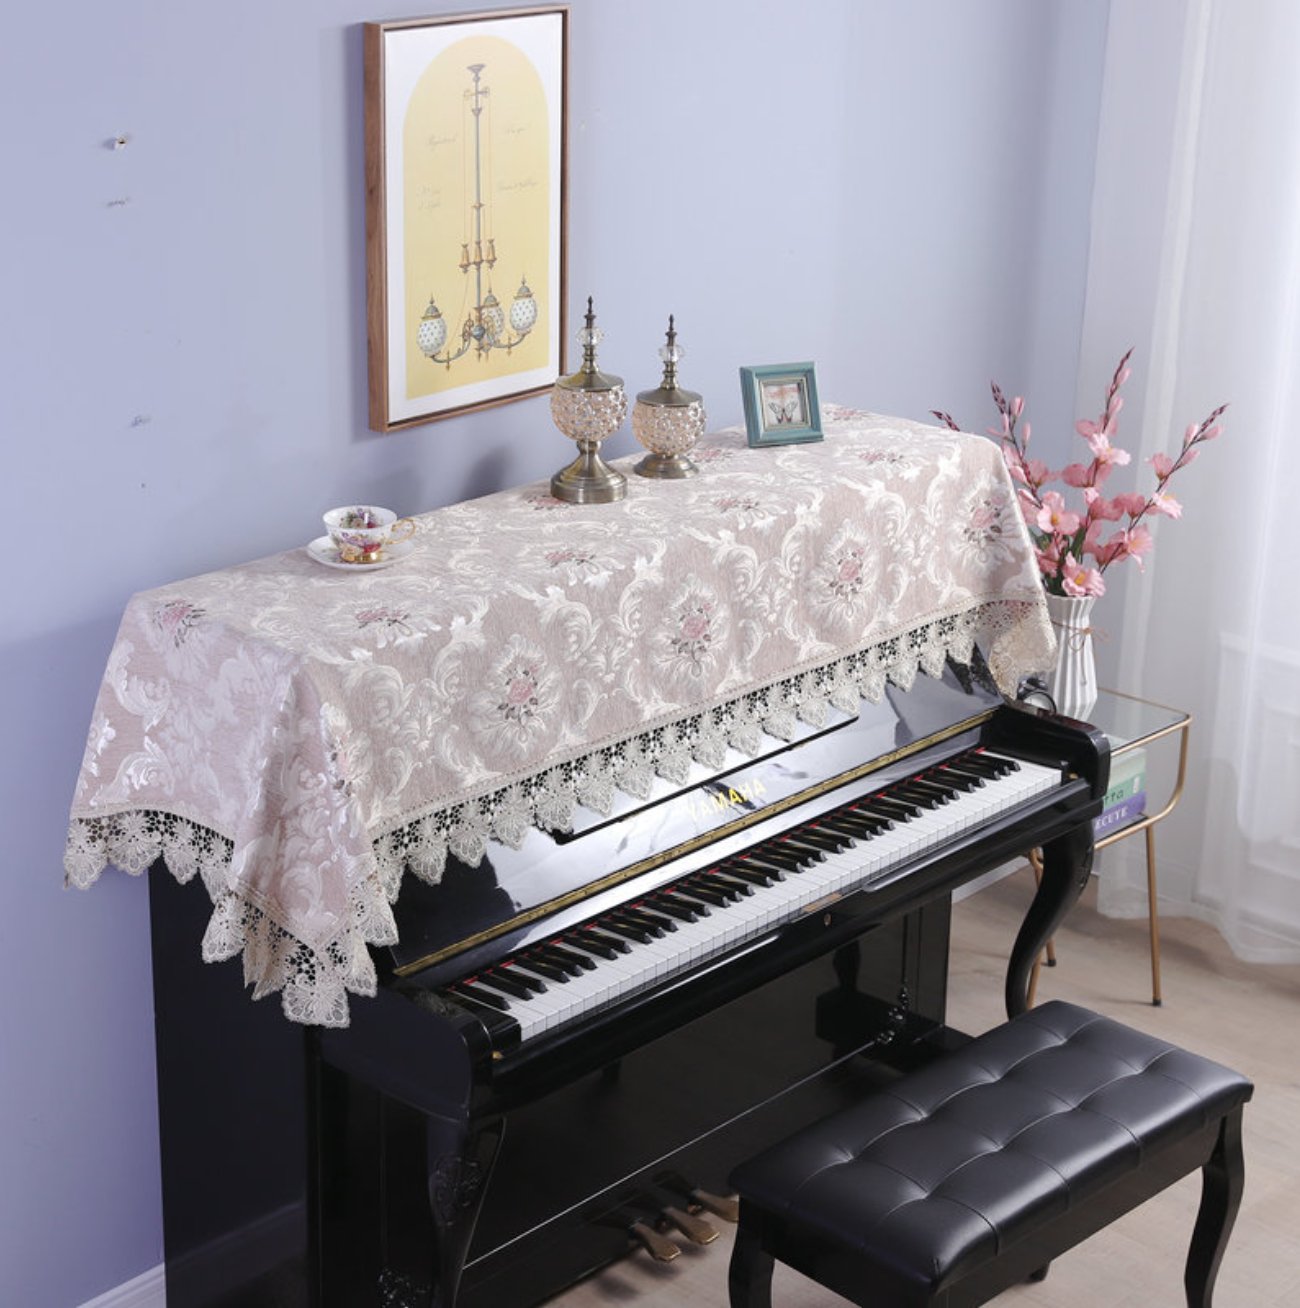 Khăn phủ đàn piano cơ đàn piano điện tử 88 phím phong cách Châu Âu cổ điển sang trọng chống bụi chống xước - Hàng chính hãng